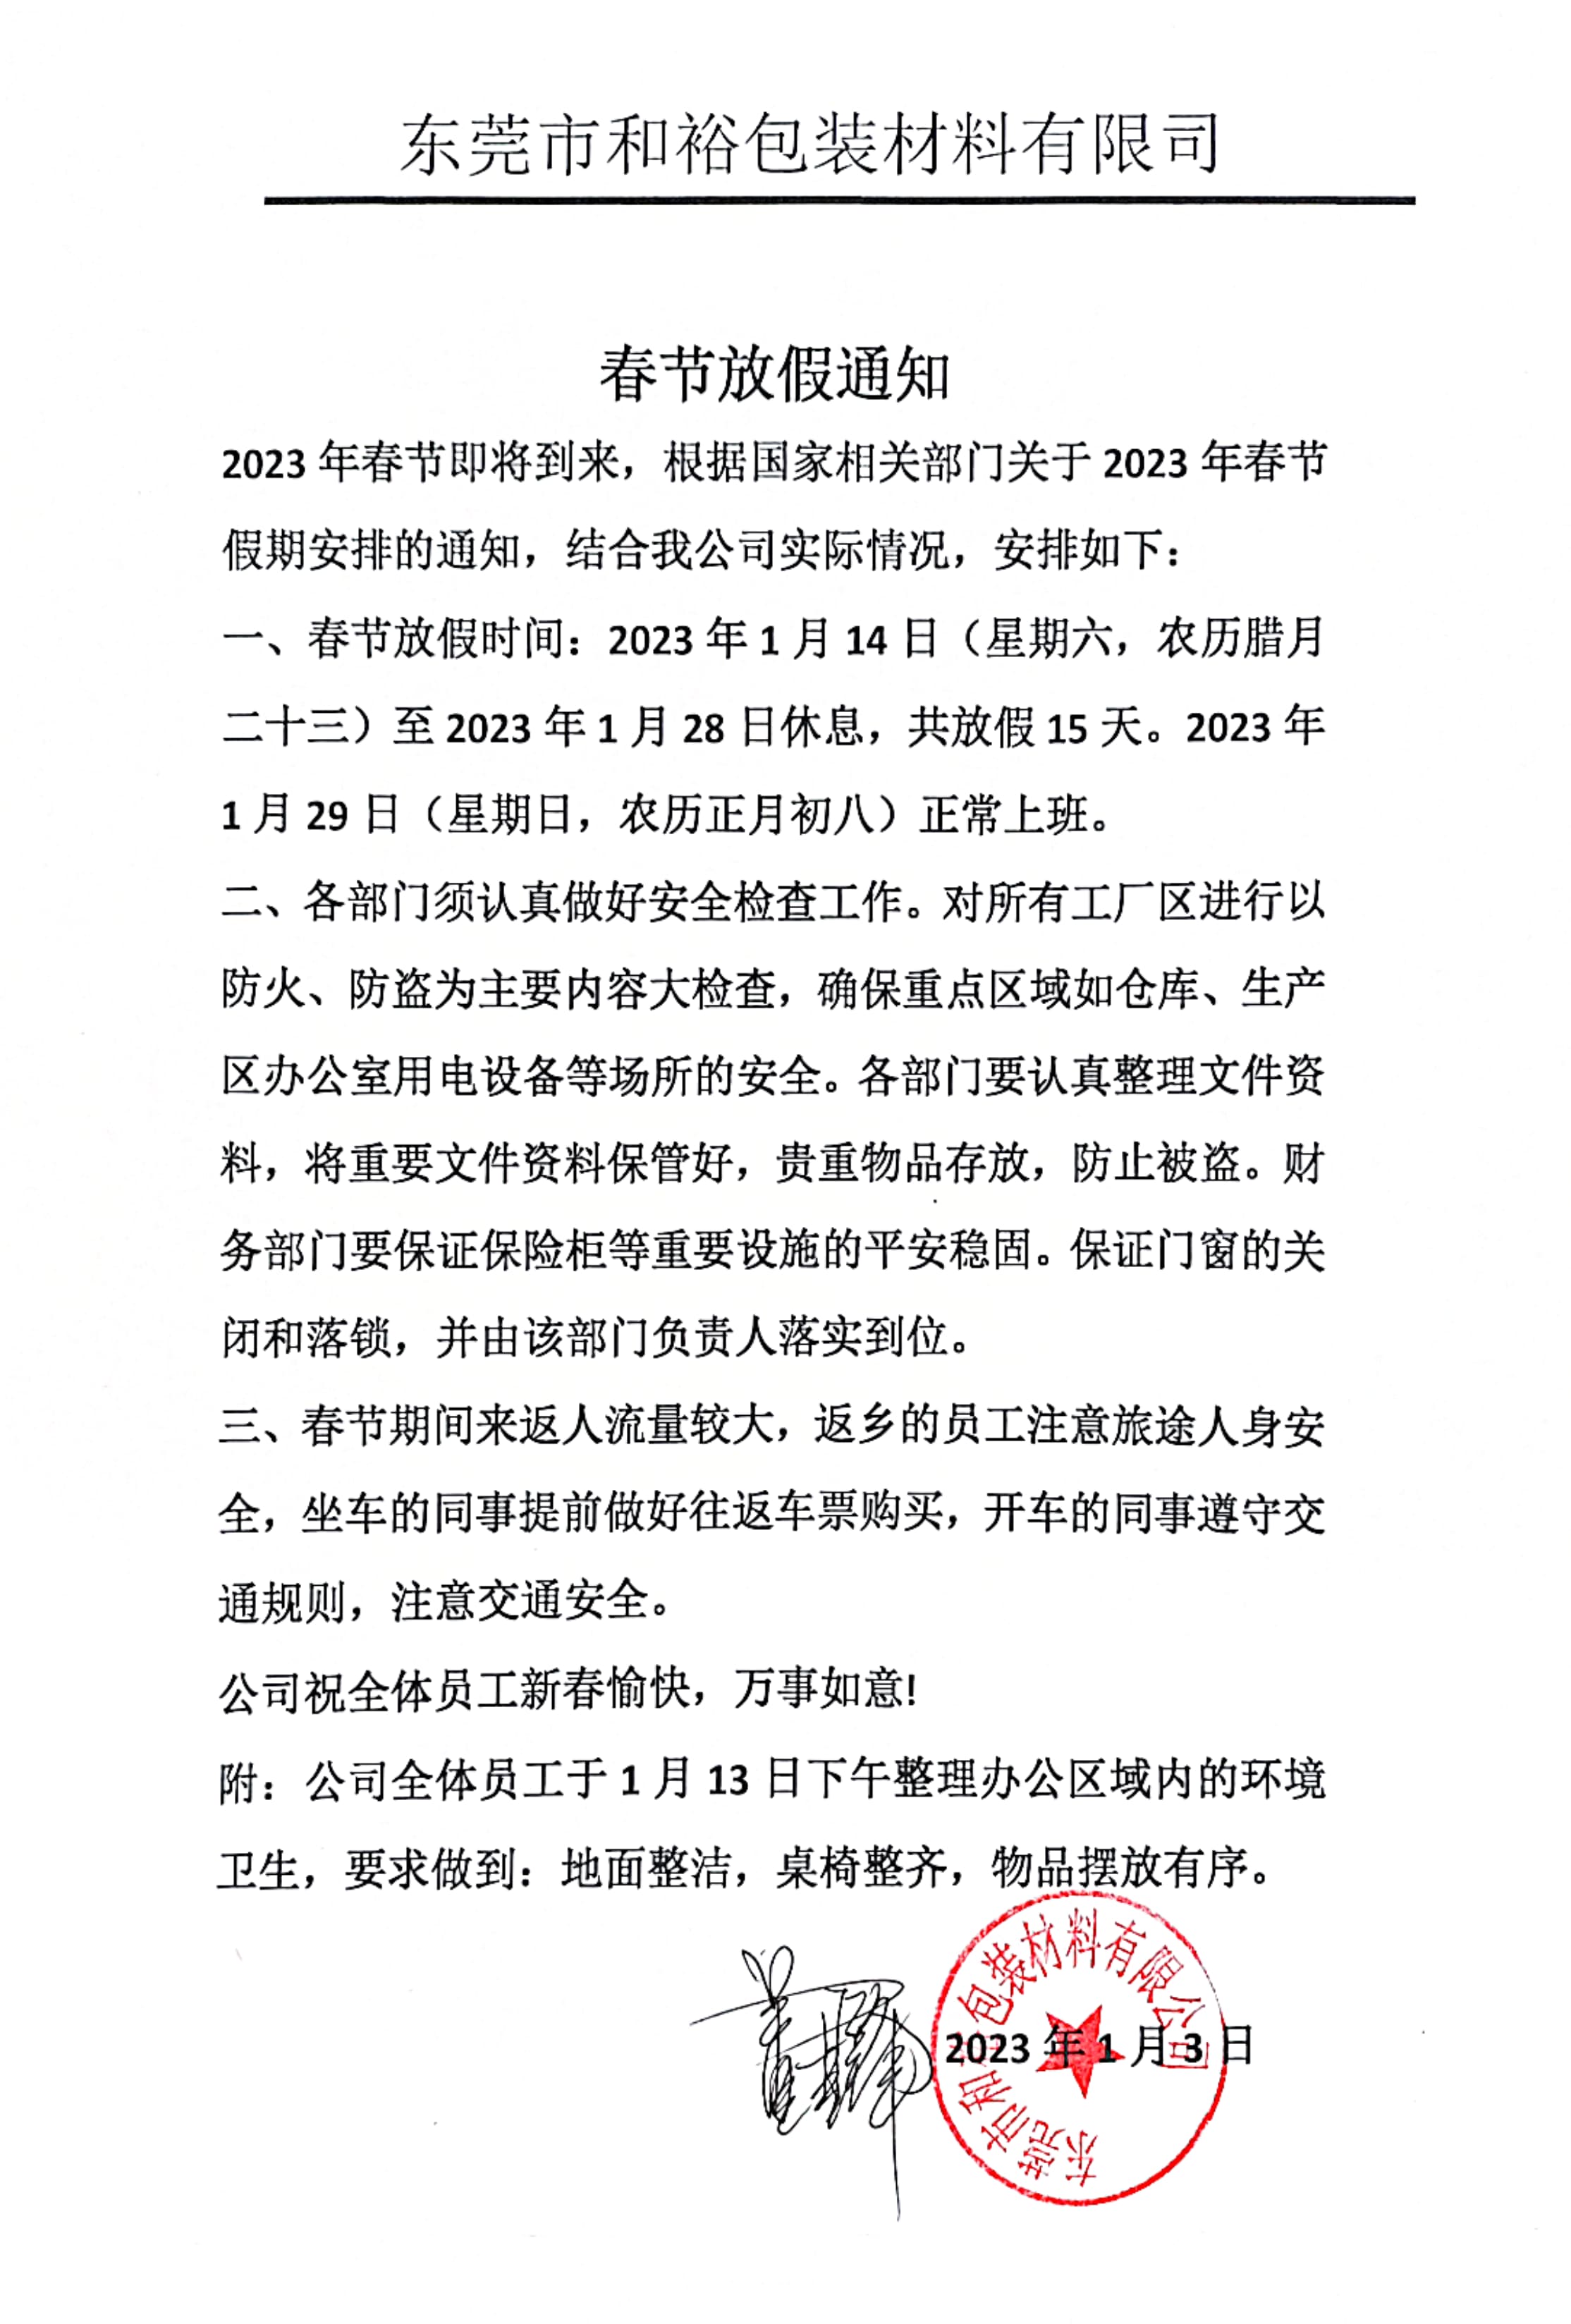 赤峰市2023年和裕包装春节放假通知